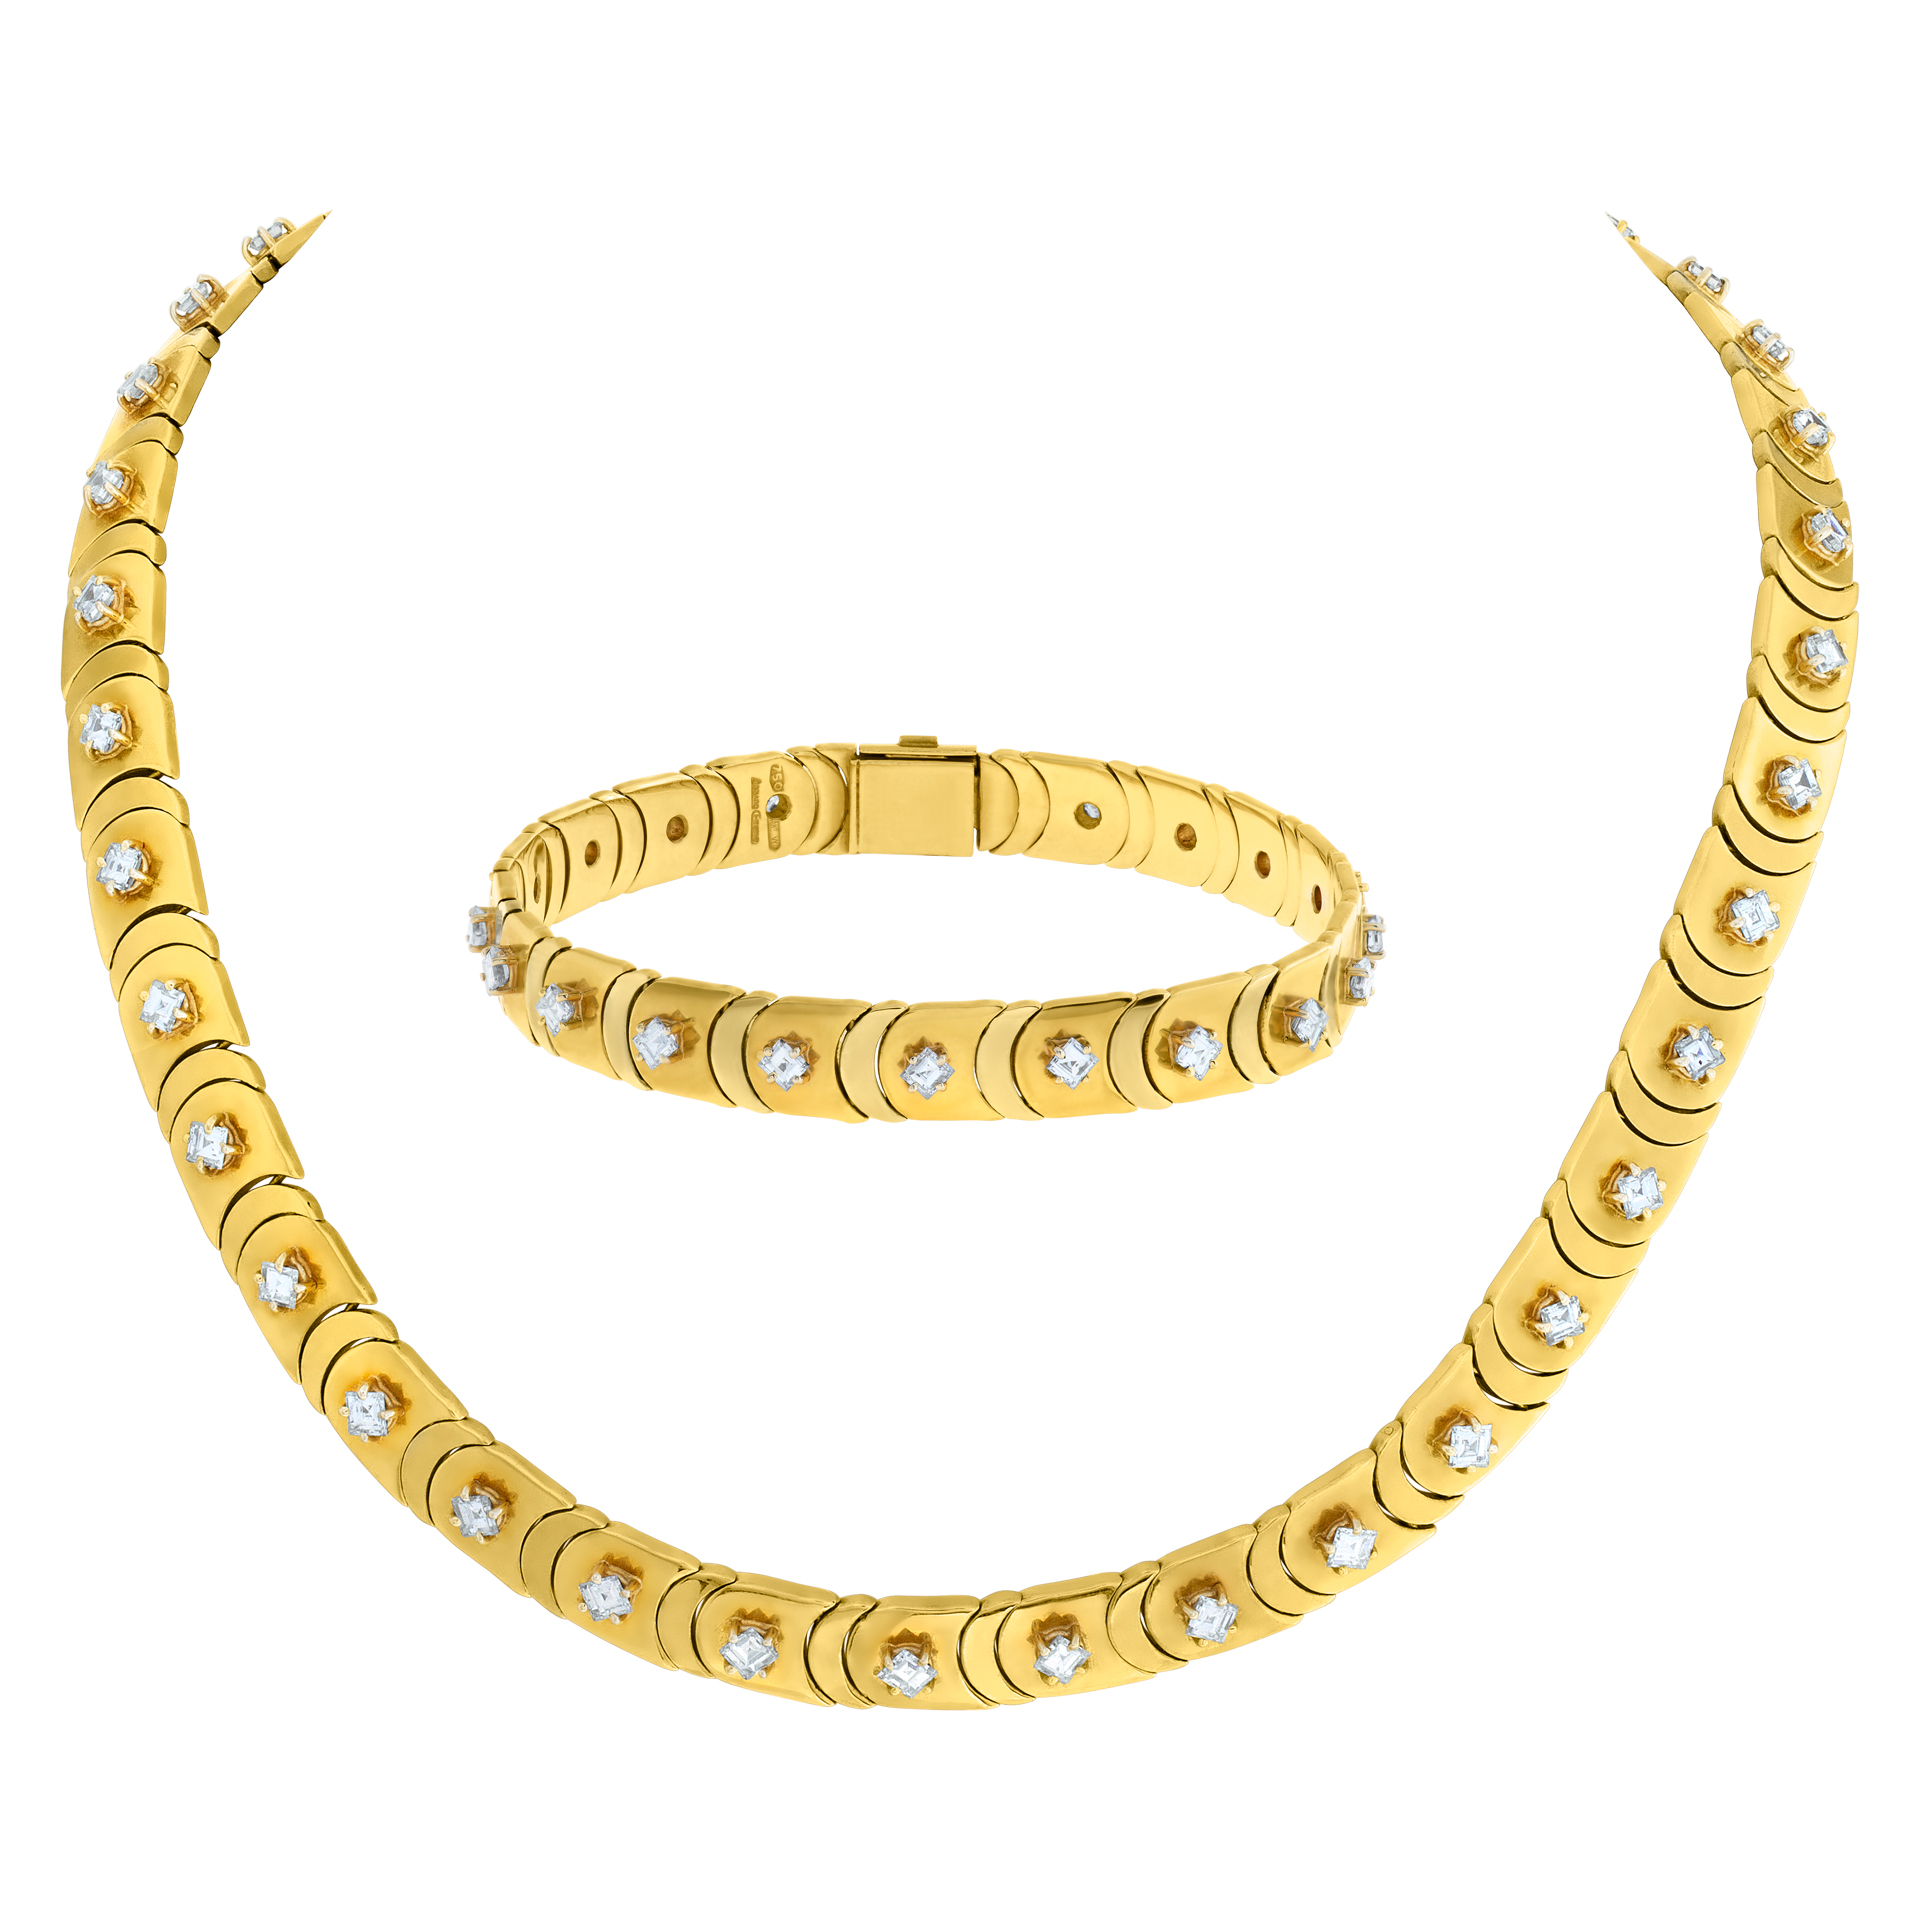 Chimento diamond necklace/choker with bracelet in 18k